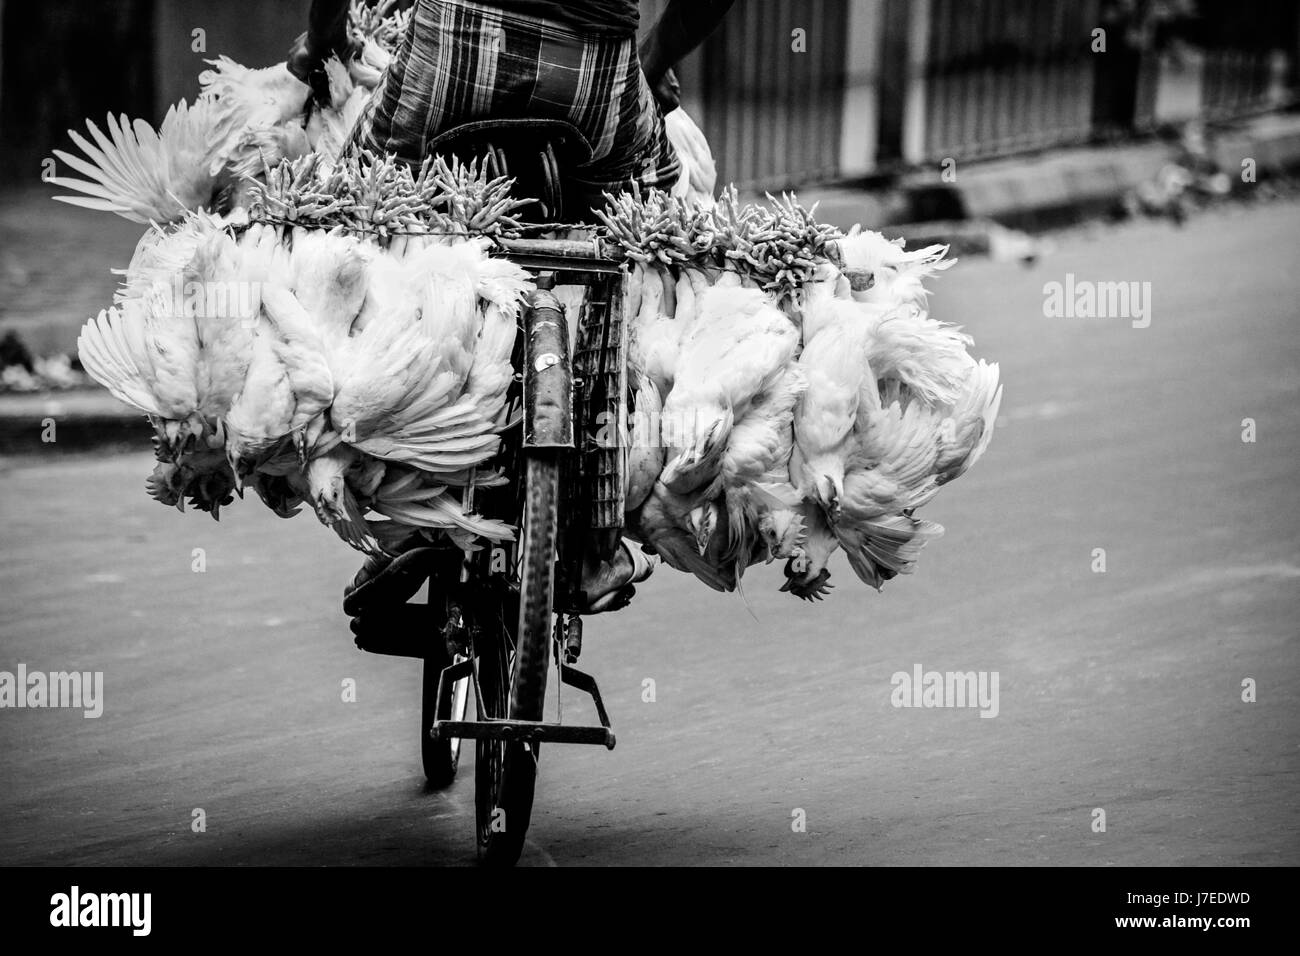 Gritty reportaje en monocromo de indios guy traficando con bicicleta de carretera en la ciudad de Calcuta con gallinas vivas trussed y atados a su bicicleta Foto de stock